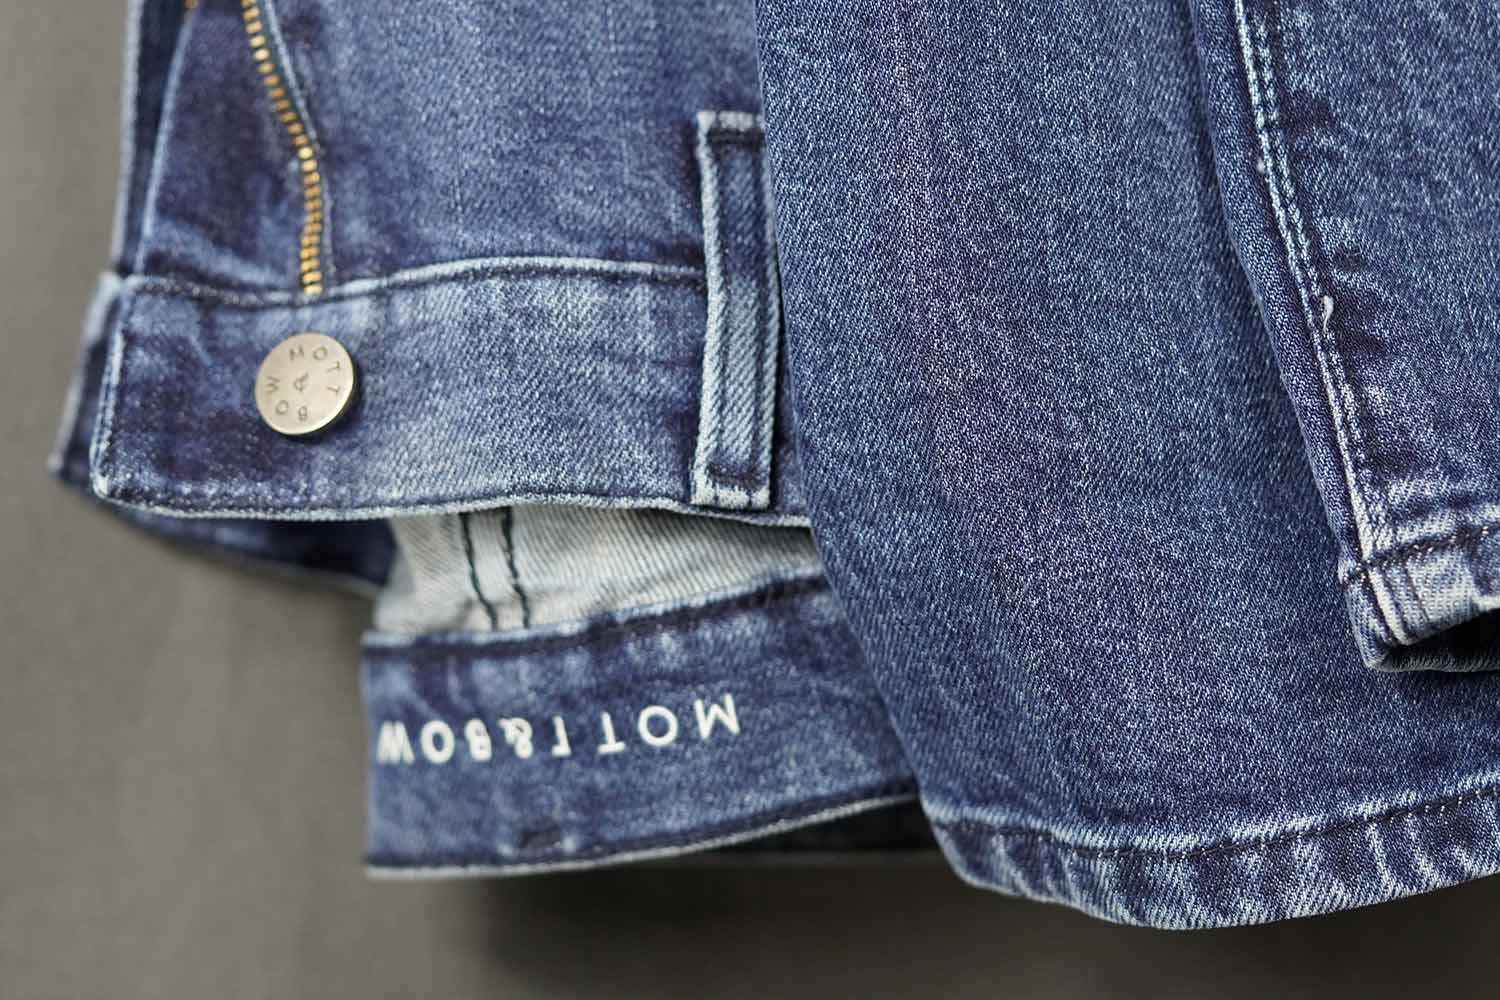 Mott & Bow Jeans Wash Details